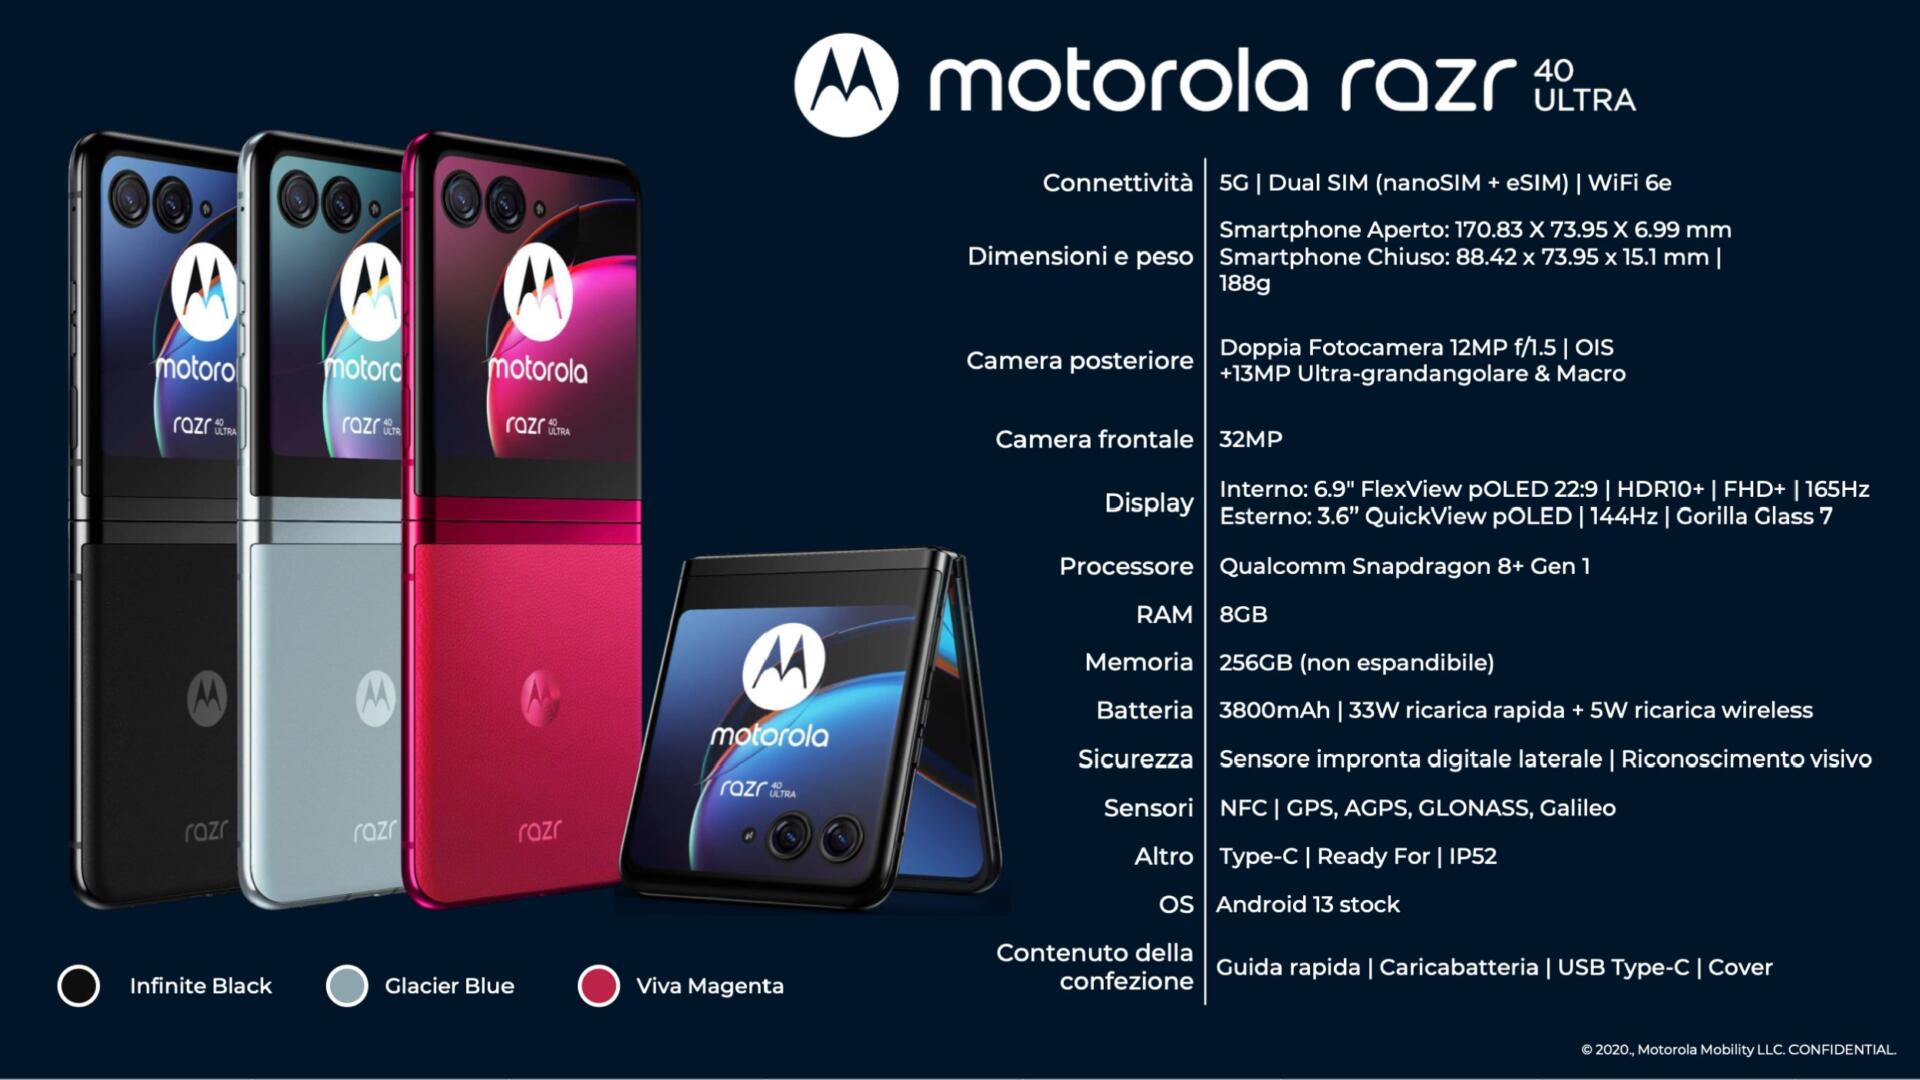 Motorola Razr 40 Utra